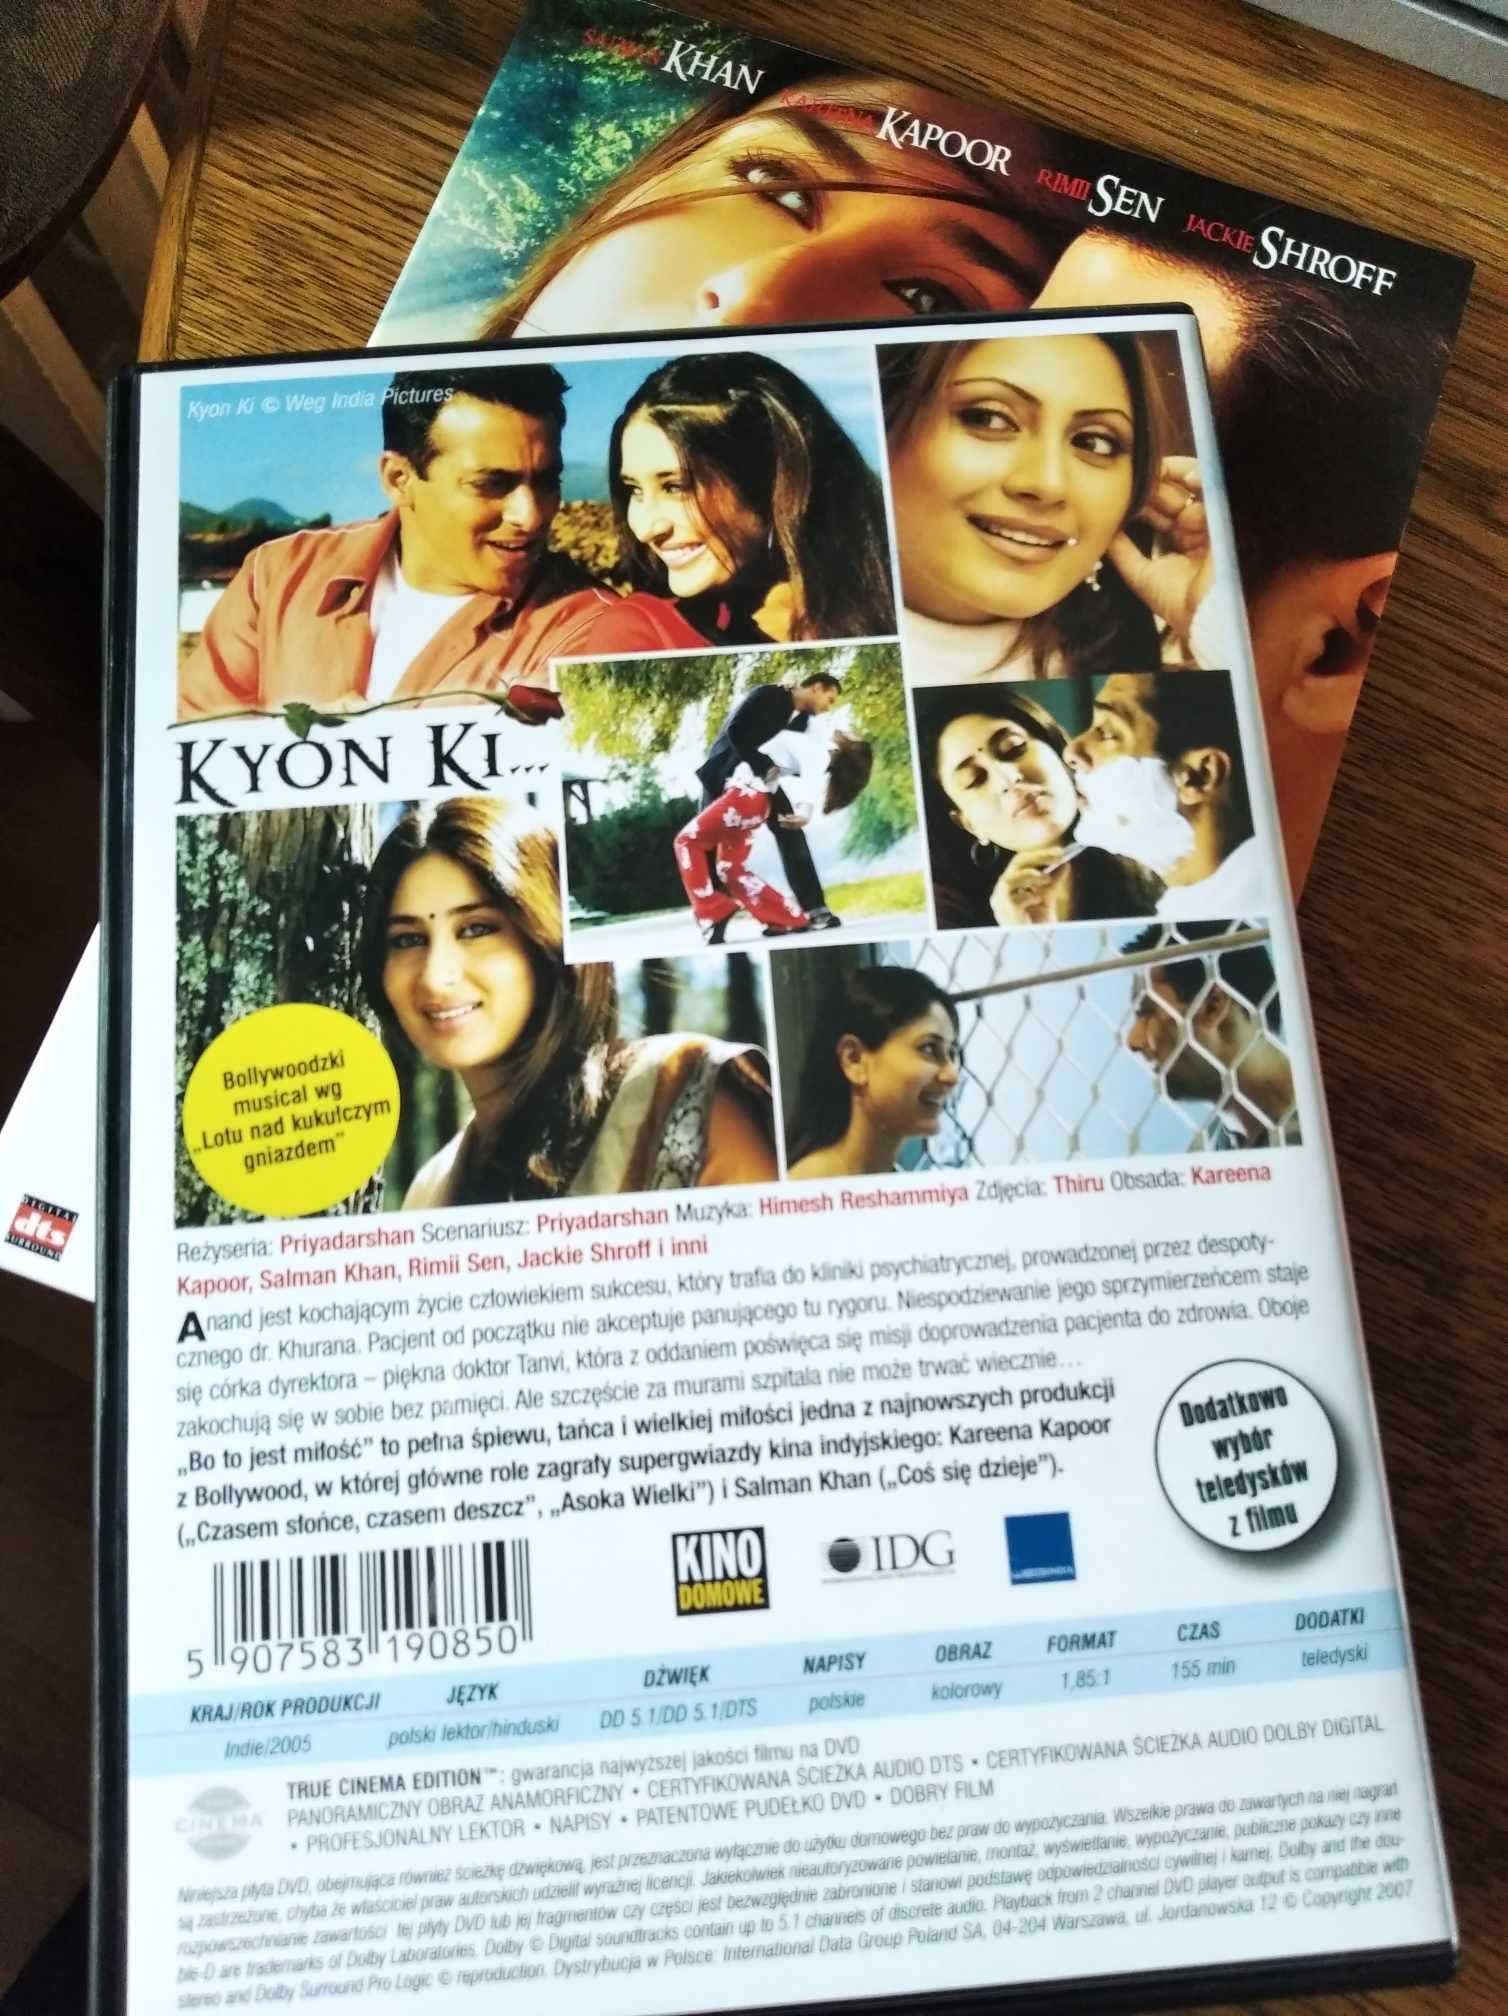 Sprzedam płytę DVD z filmem Bollywood : "bo to jest MIŁOŚĆ"